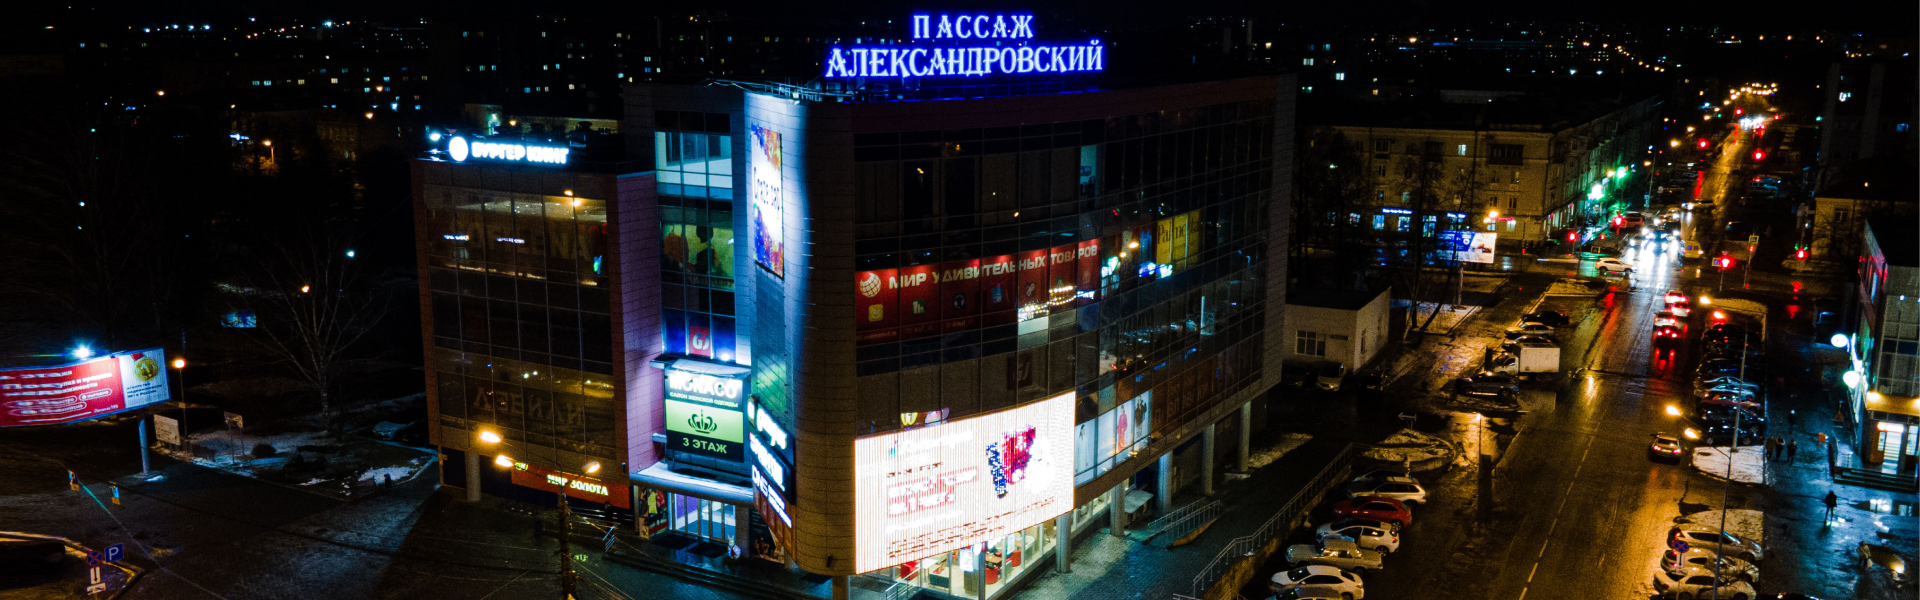 Медиафасад для торгового центра Александровский Пассаж